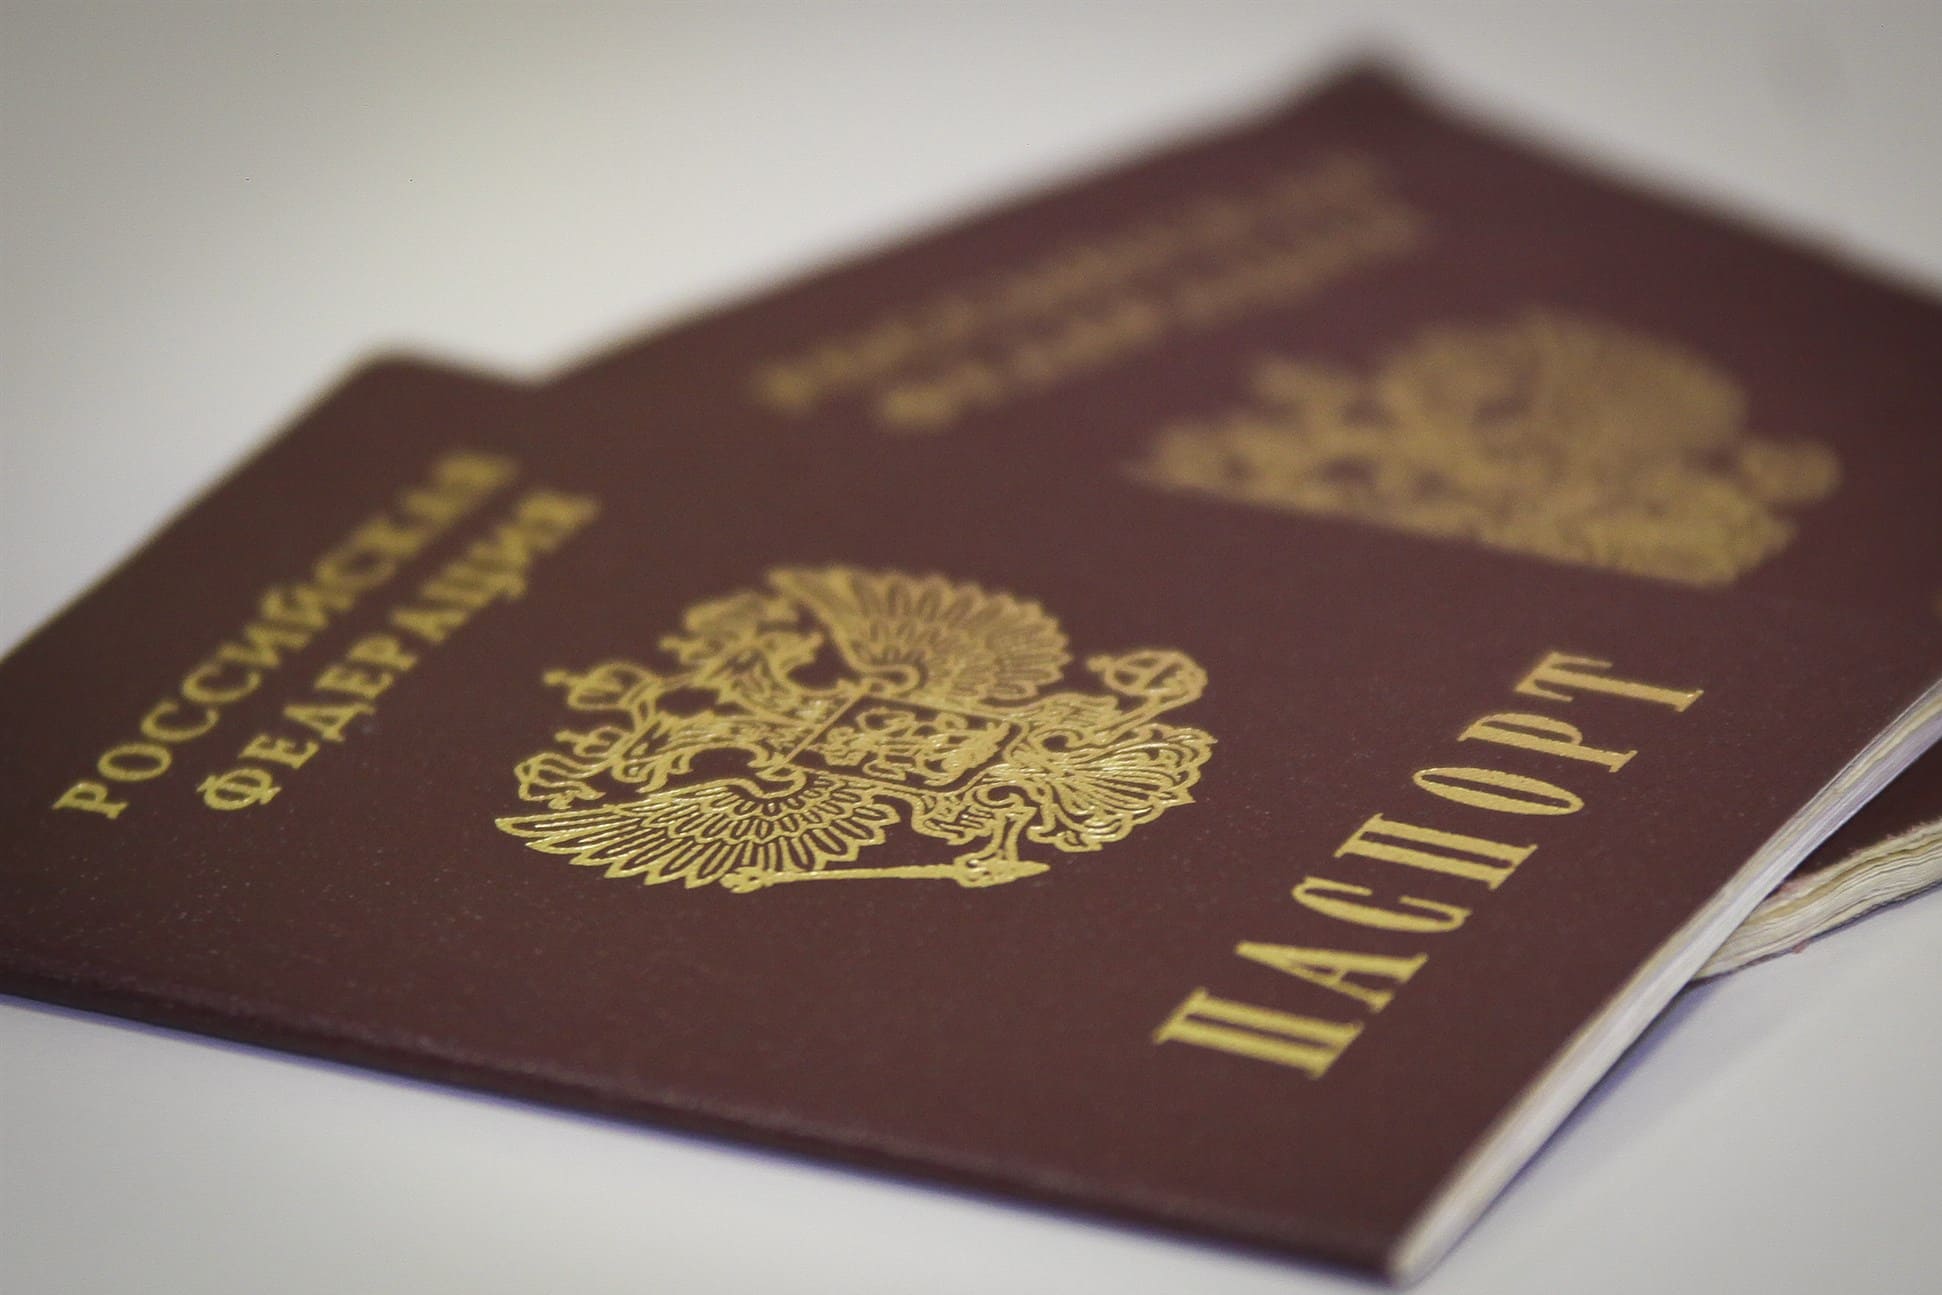 В Севастополе произошел сбой при проверке паспортов на действительность, люди жалуются на невозможность совершения нотариальных действий